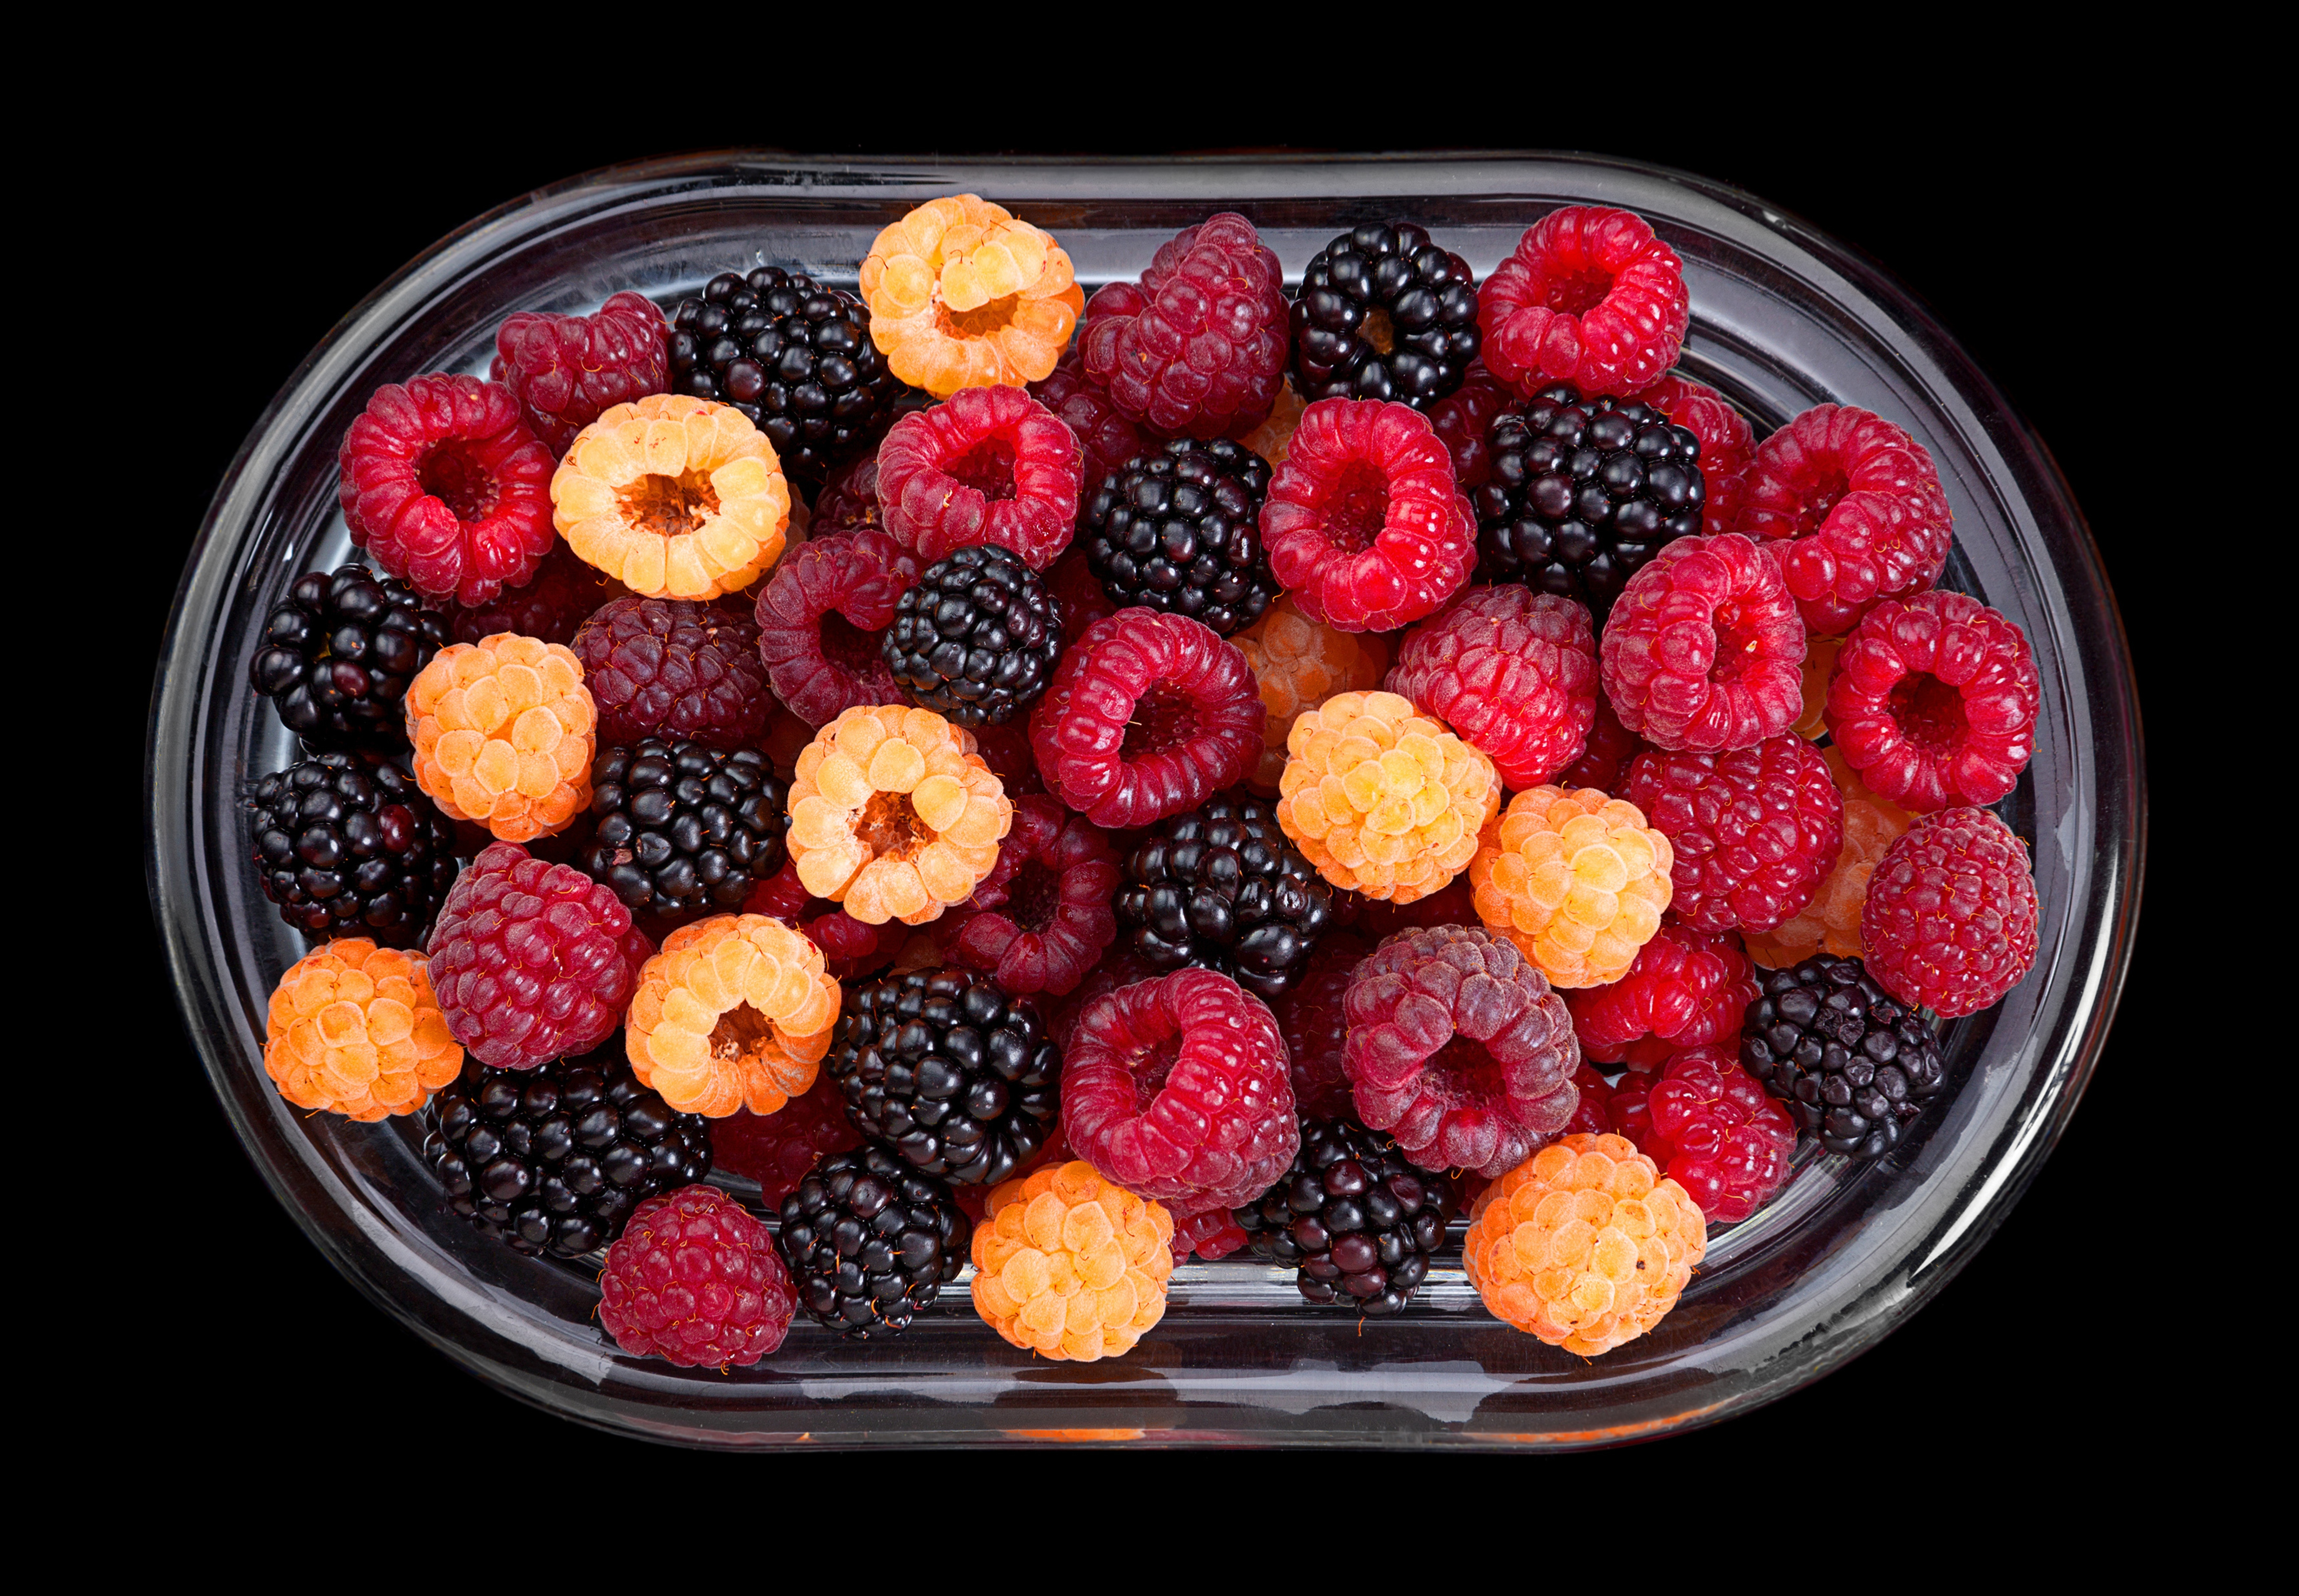 744392 免費下載壁紙 食物, 浆果, 黑莓, 水果, 树莓 屏保和圖片